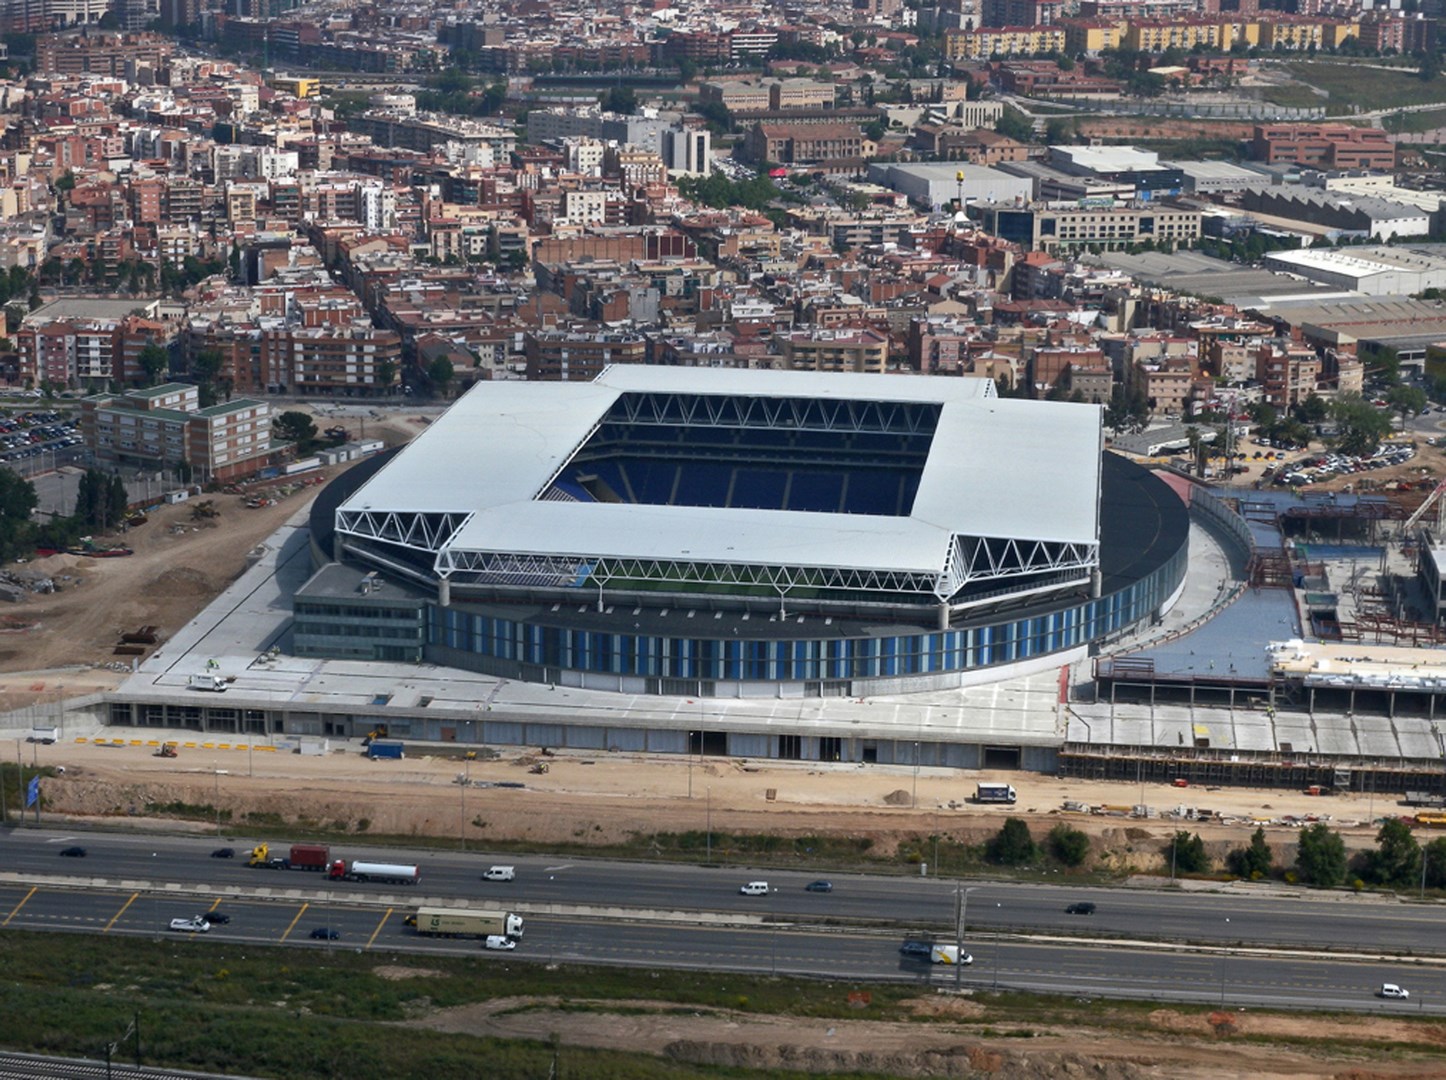 Ciudad FCC: RCD Espanyol Stadium, Barcelona